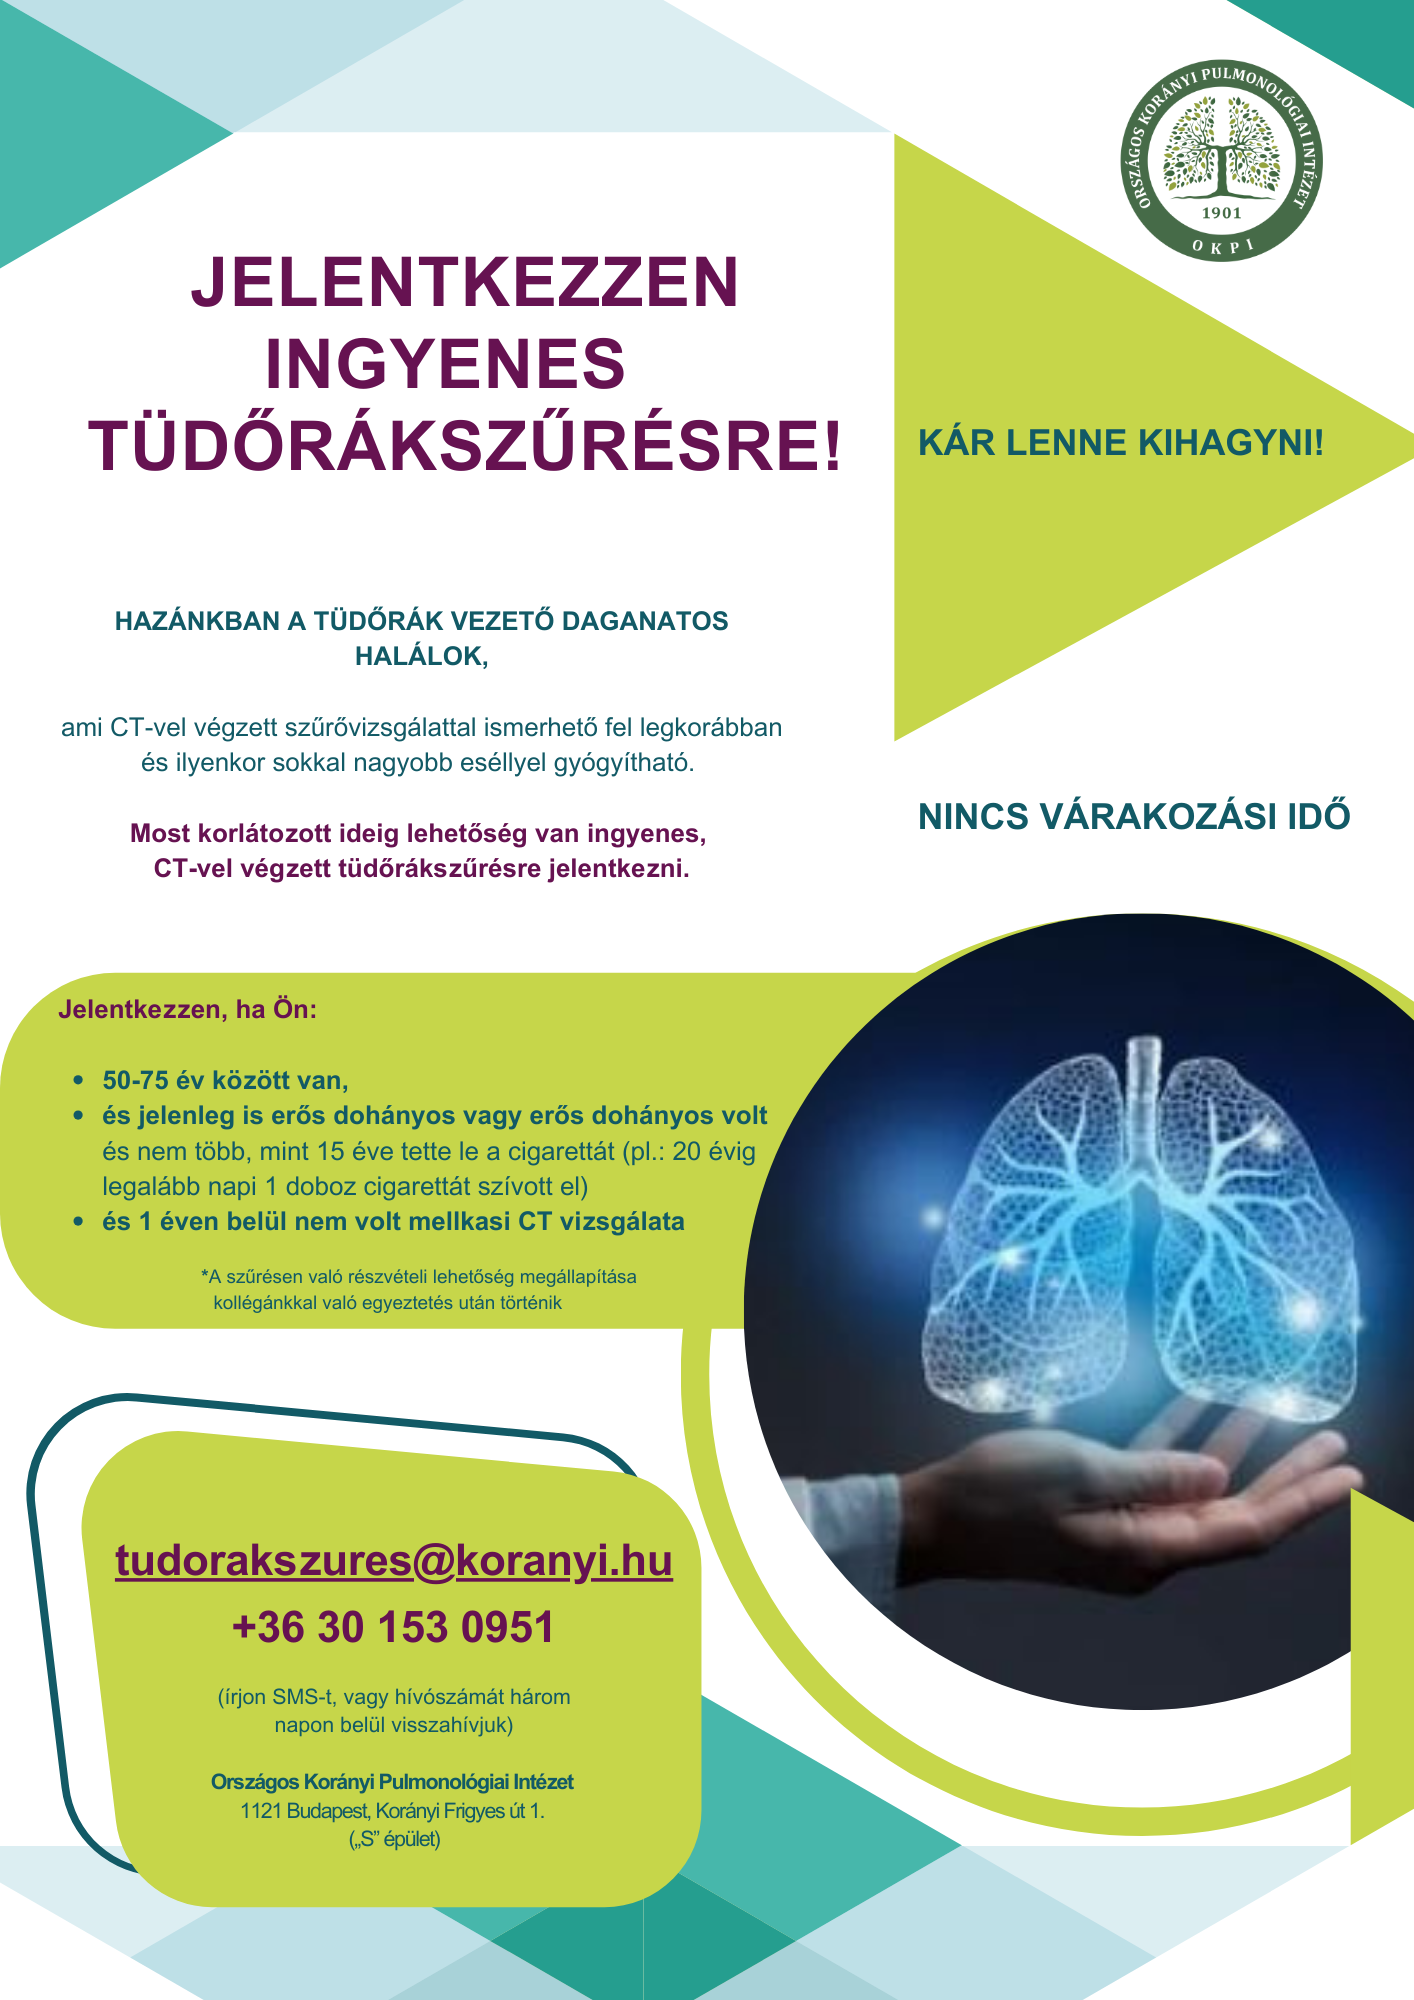 Országos Korányi Pulmonológiai Intézet - tüdőrákszűrő program